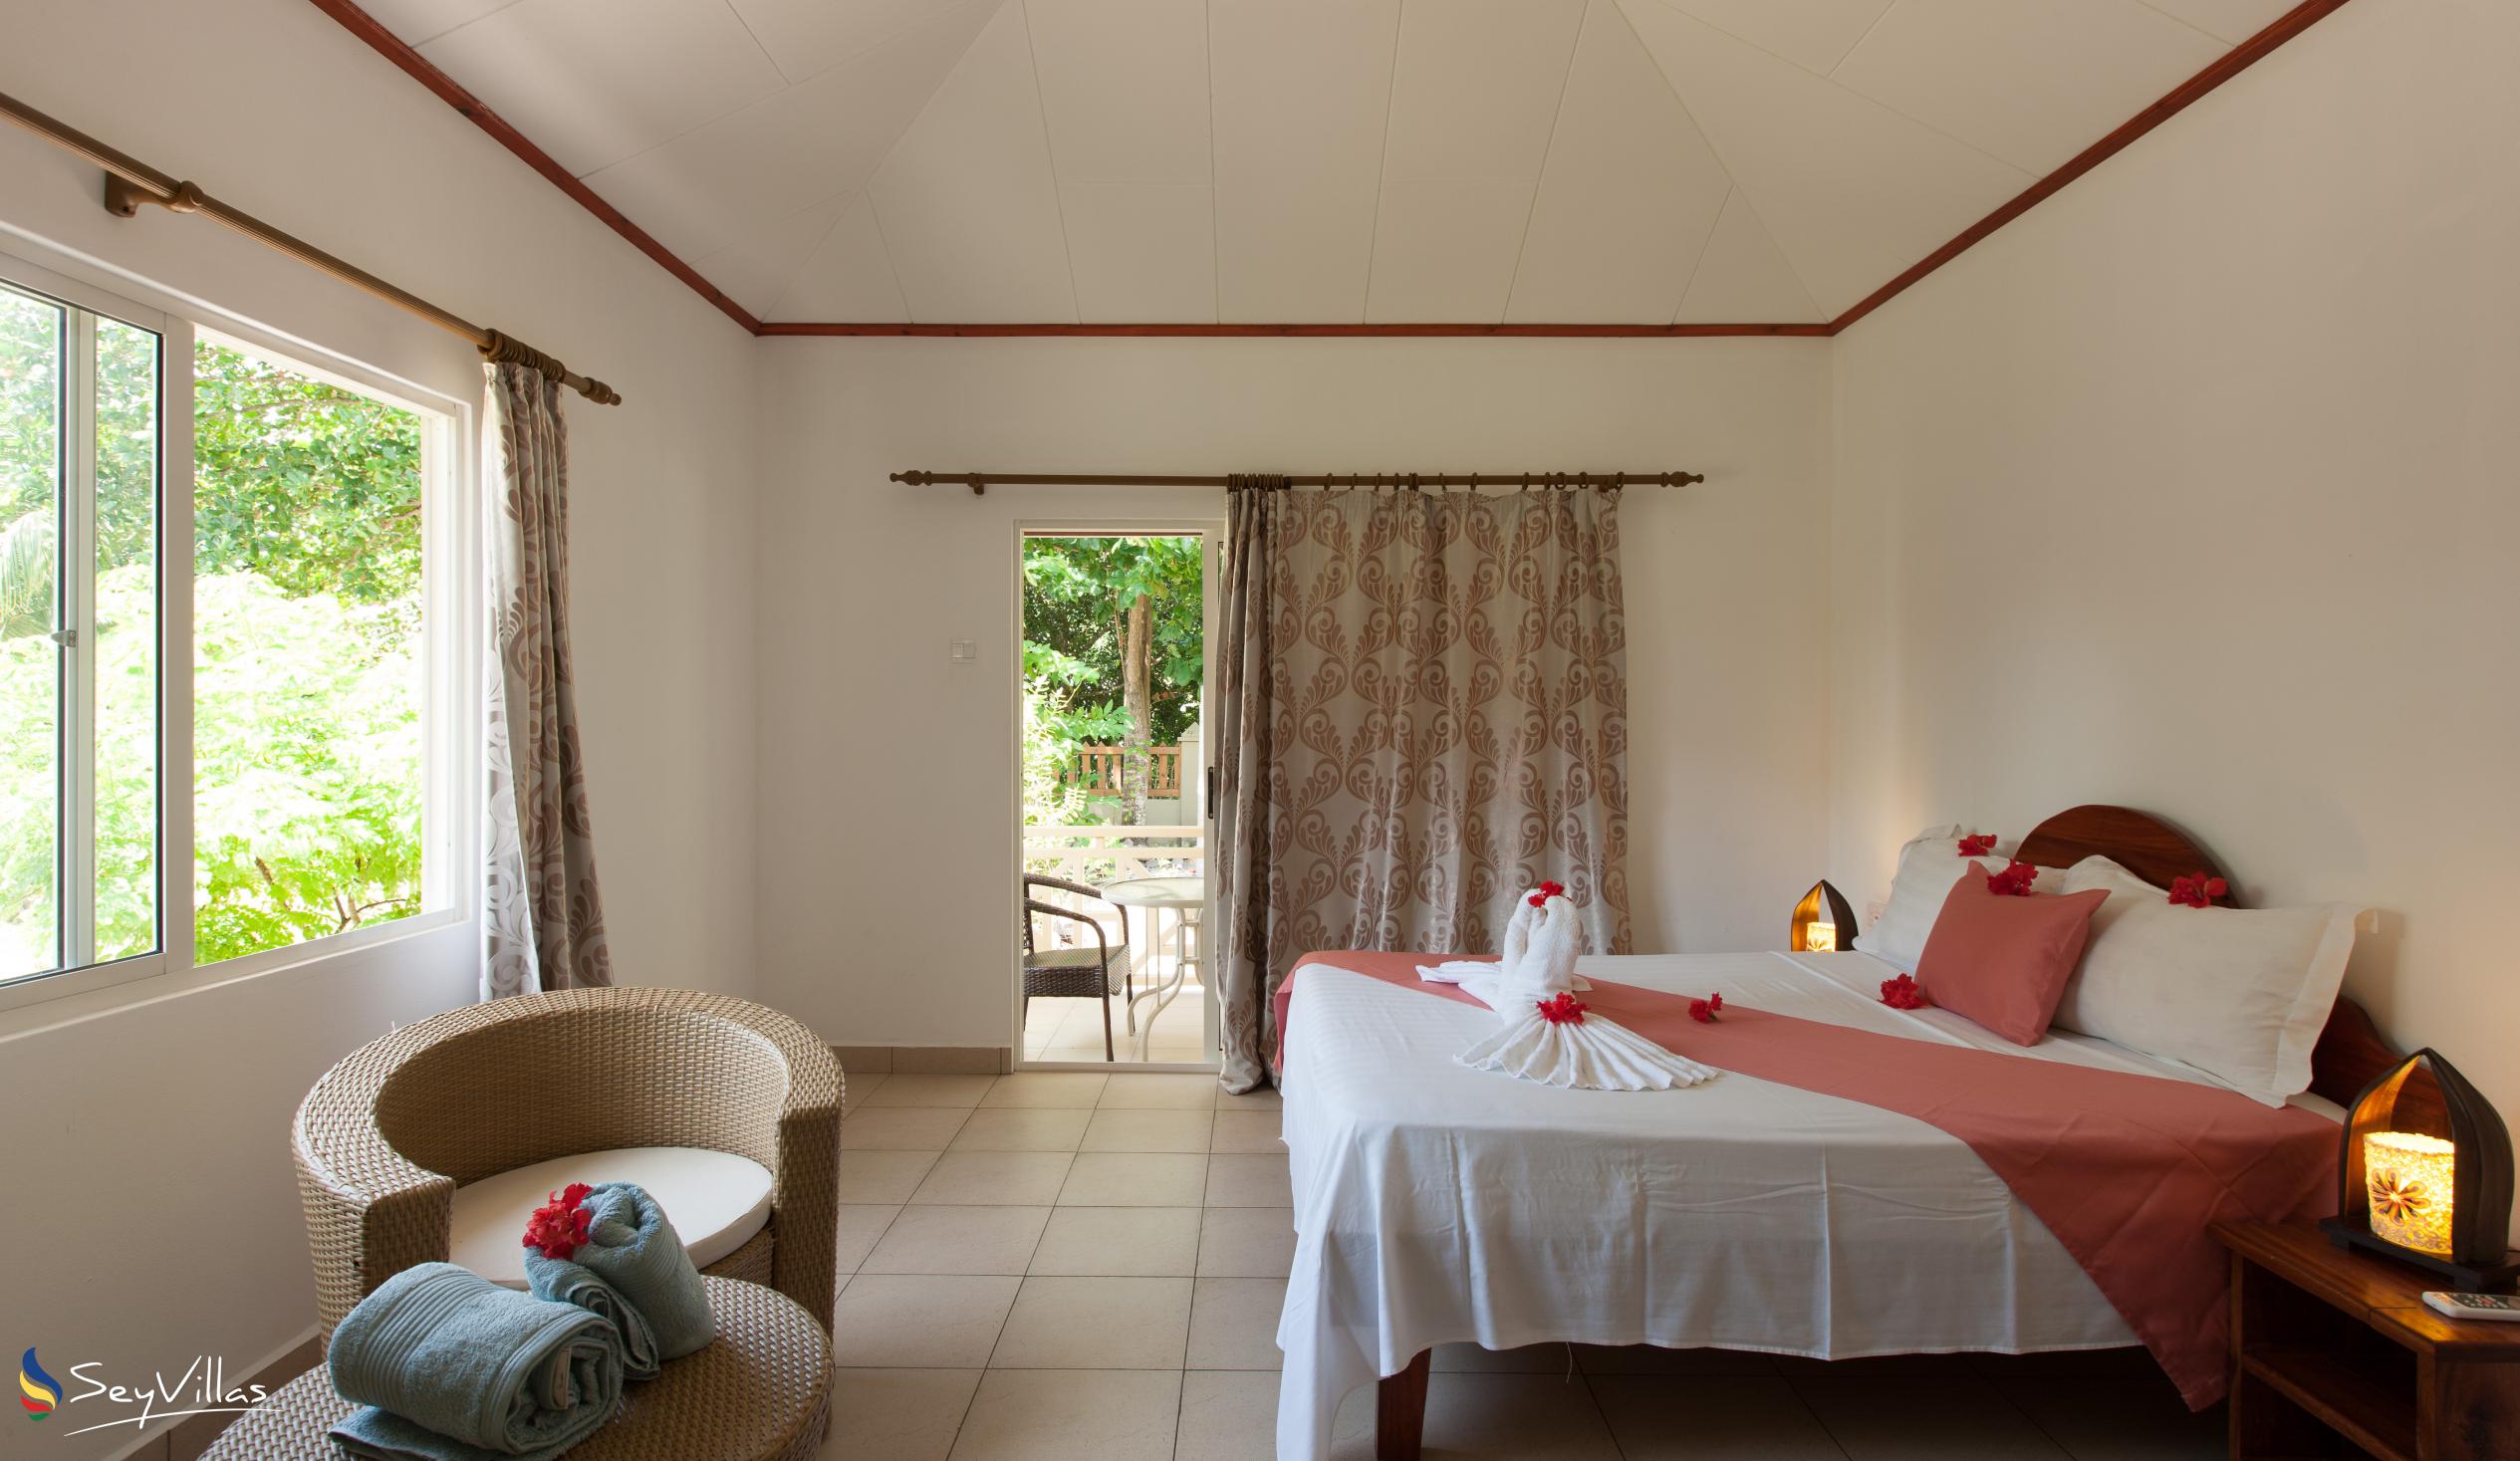 Foto 4: Hostellerie La Digue - Chalet 3 chambres - La Digue (Seychelles)